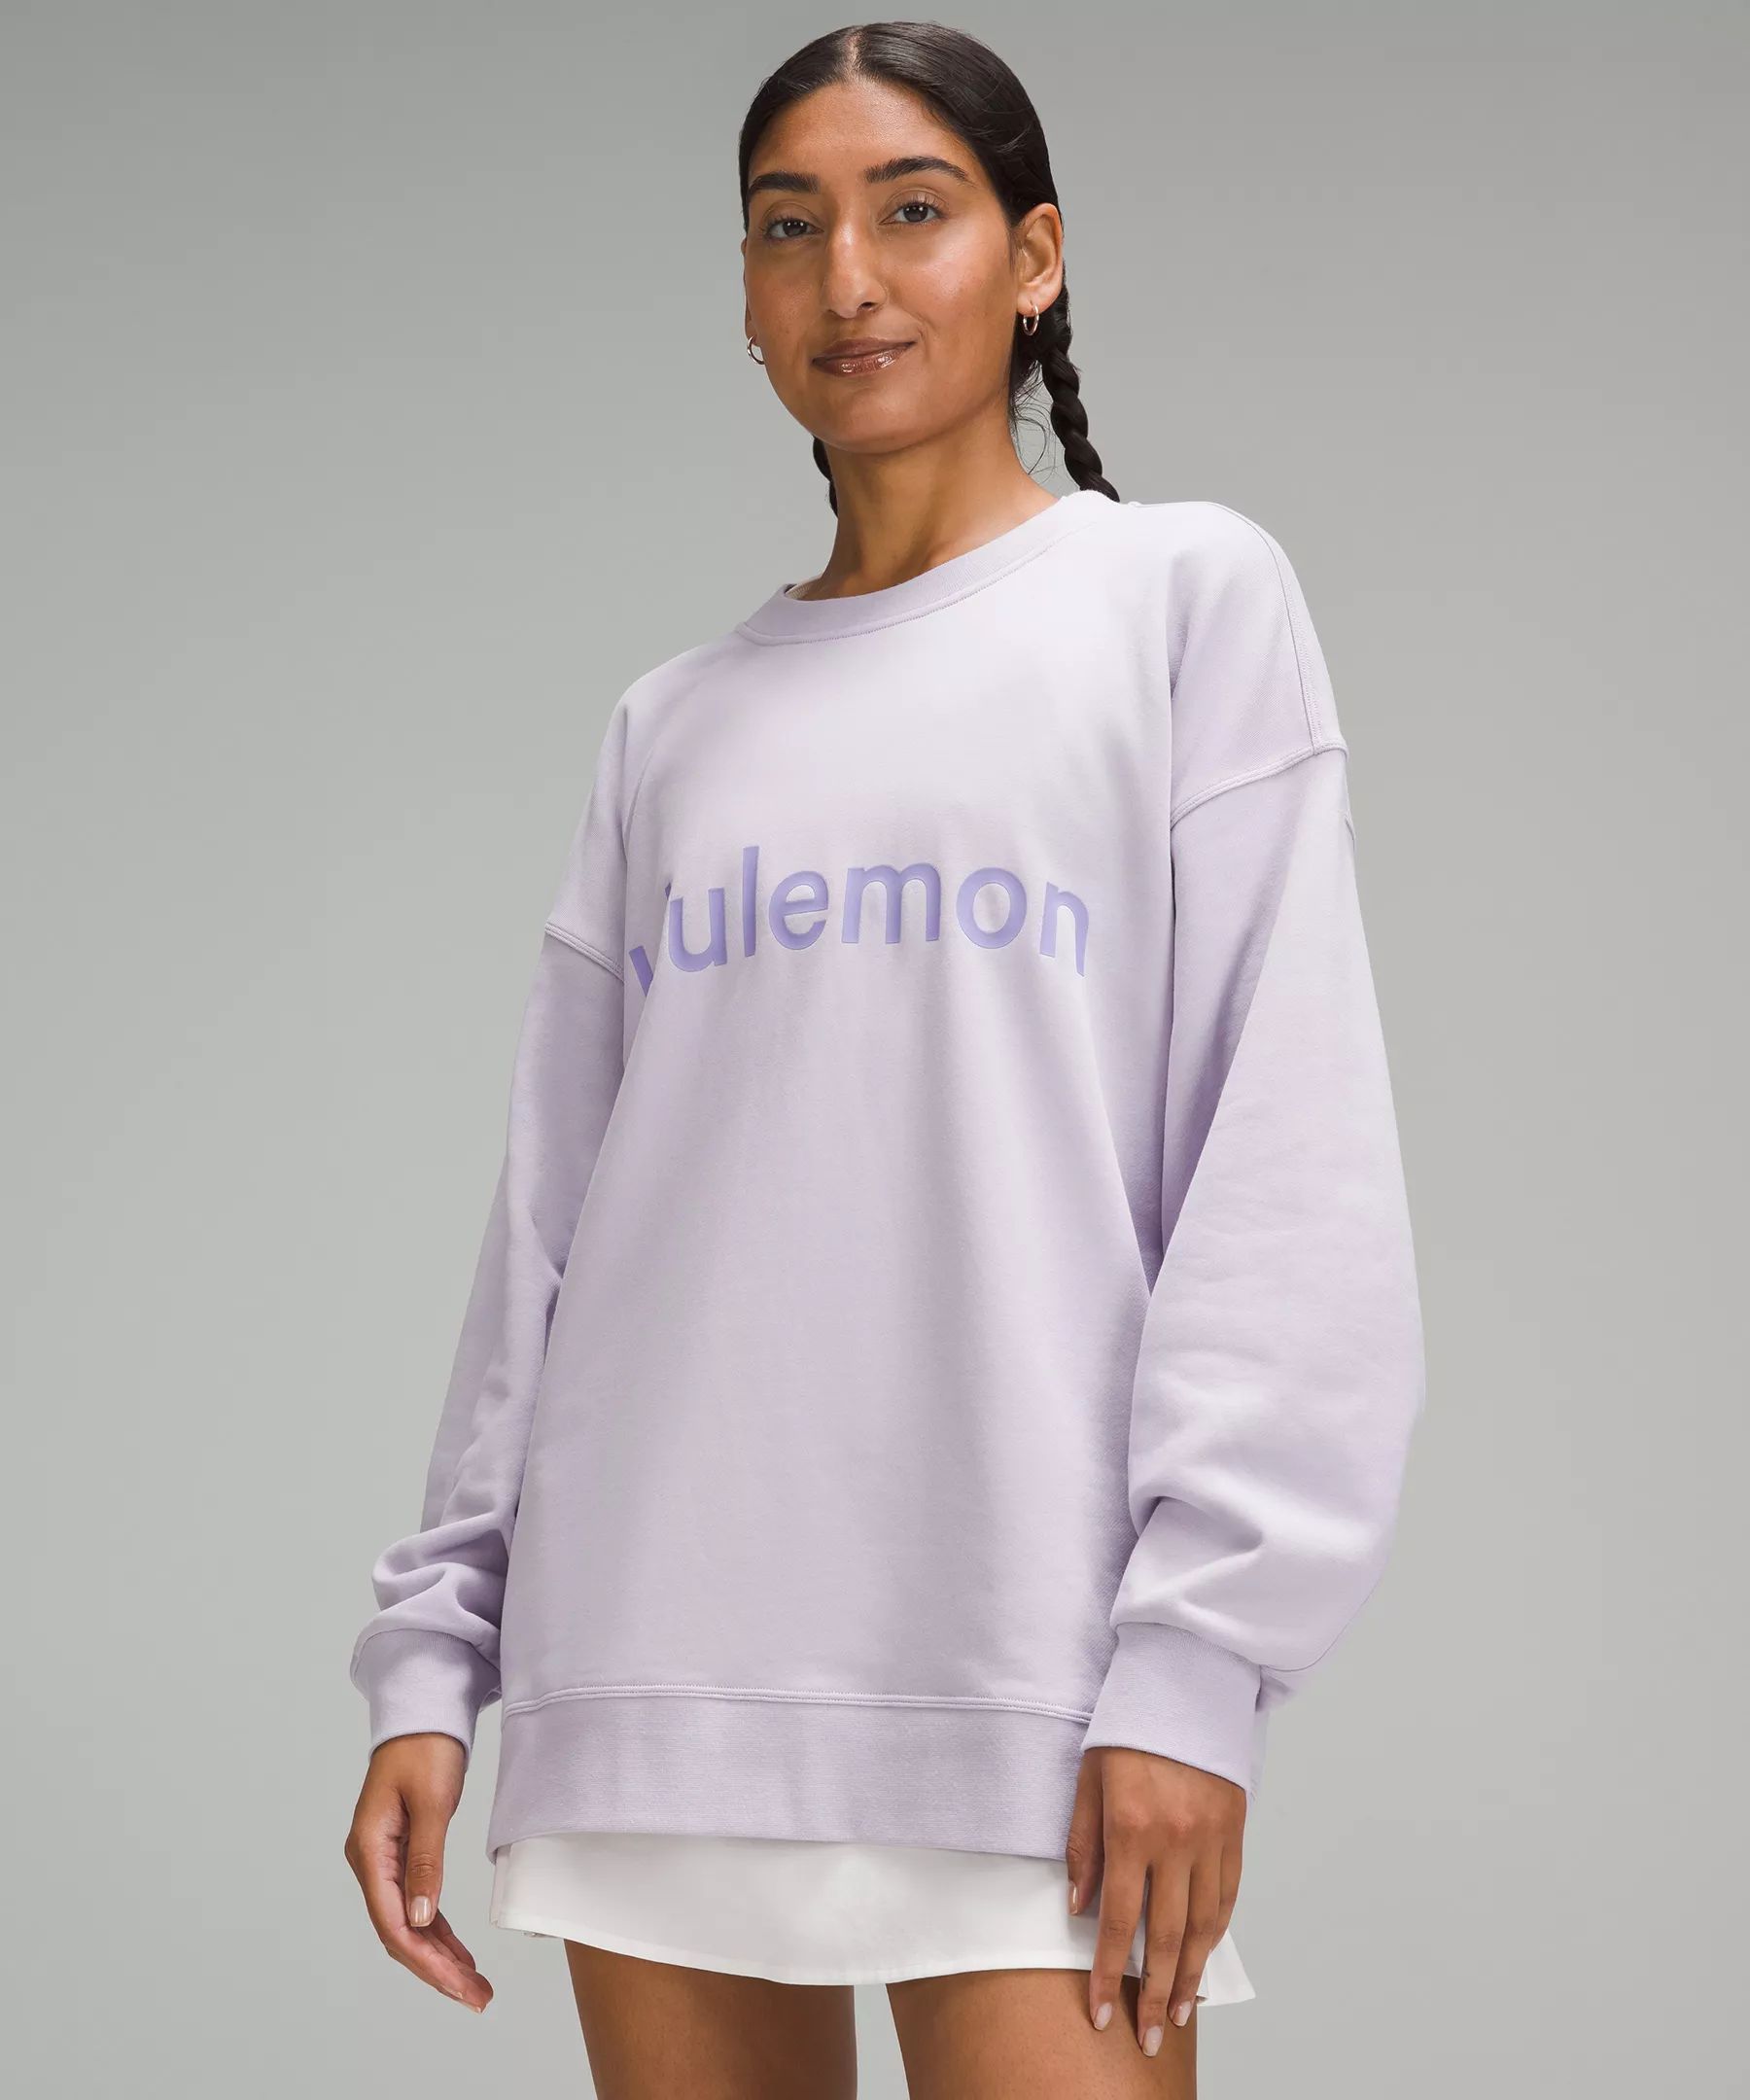 Perfectly Oversized Crew *Graphic | Women's Hoodies & Sweatshirts | lululemon | Lululemon (US)